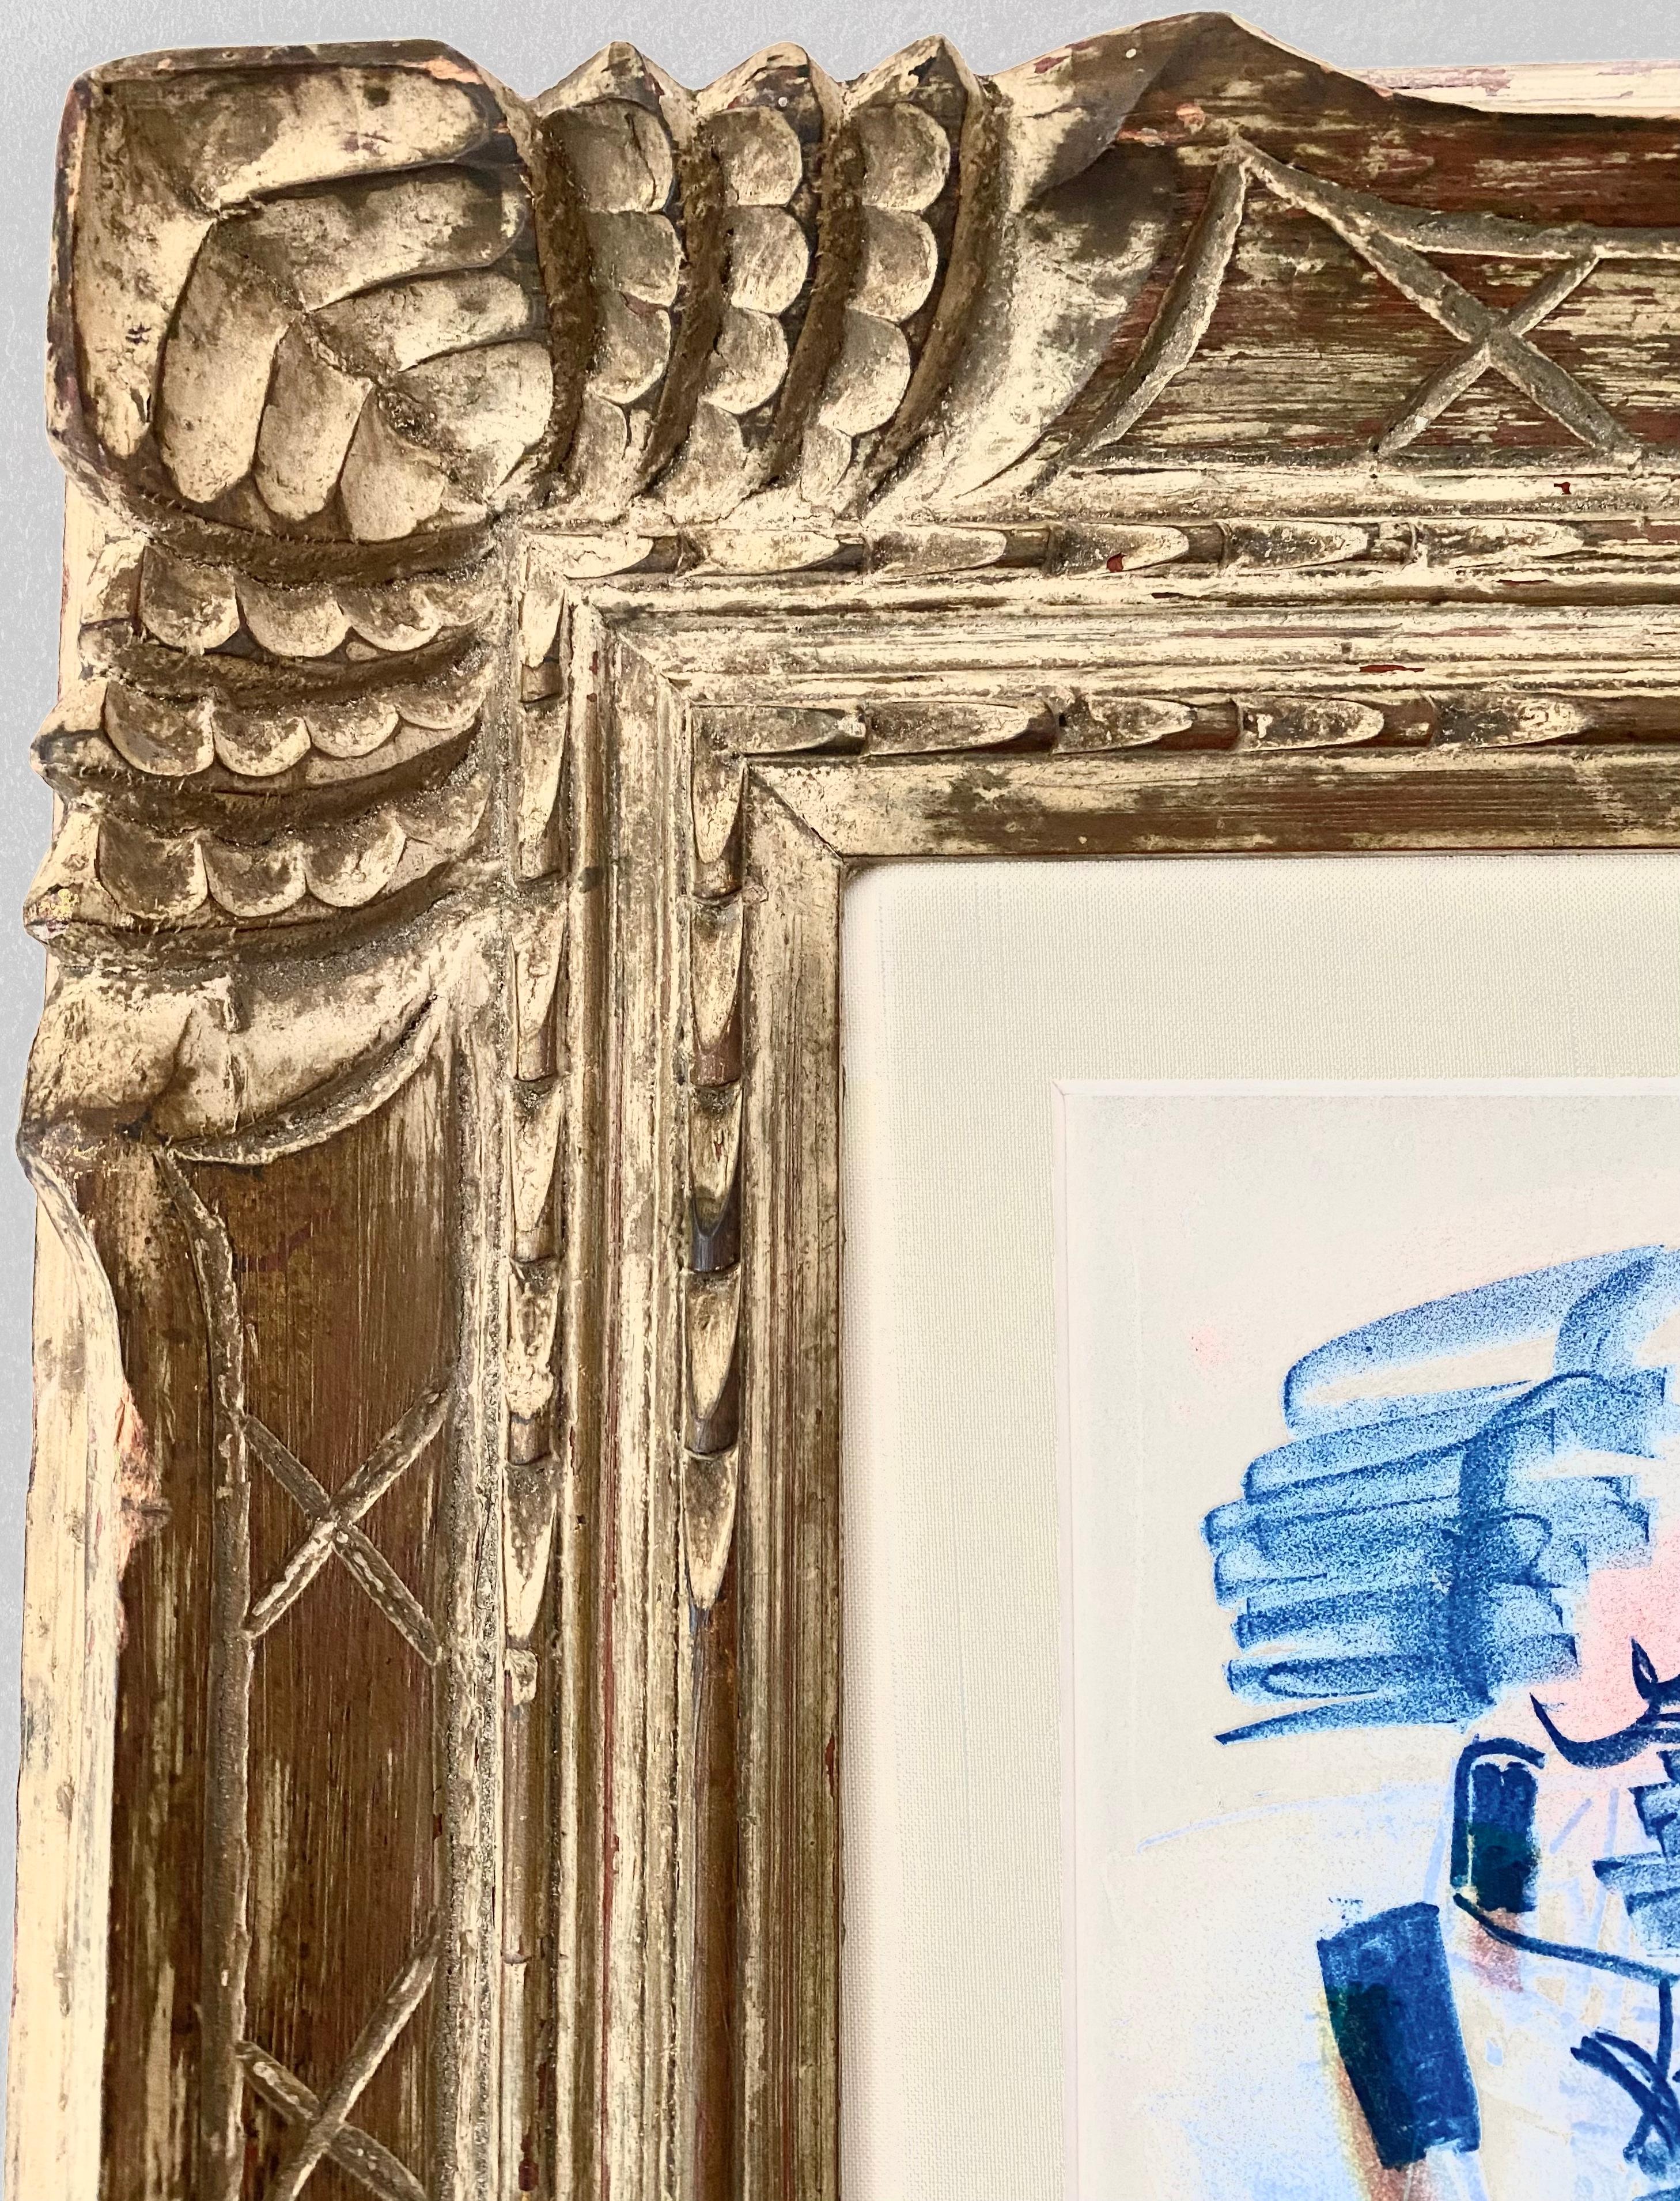 Raoul Dufy- Le grand Baigneuse (The large Bather)
Lithographie, 1928
Signé au crayon et numéroté au crayon 28/40
Taille du papier : 67,3 × 51,4 cm
Taille du cadre : 96,0 x 78,0 cm
Cette œuvre est la plus grande lithographie en couleurs réalisée par